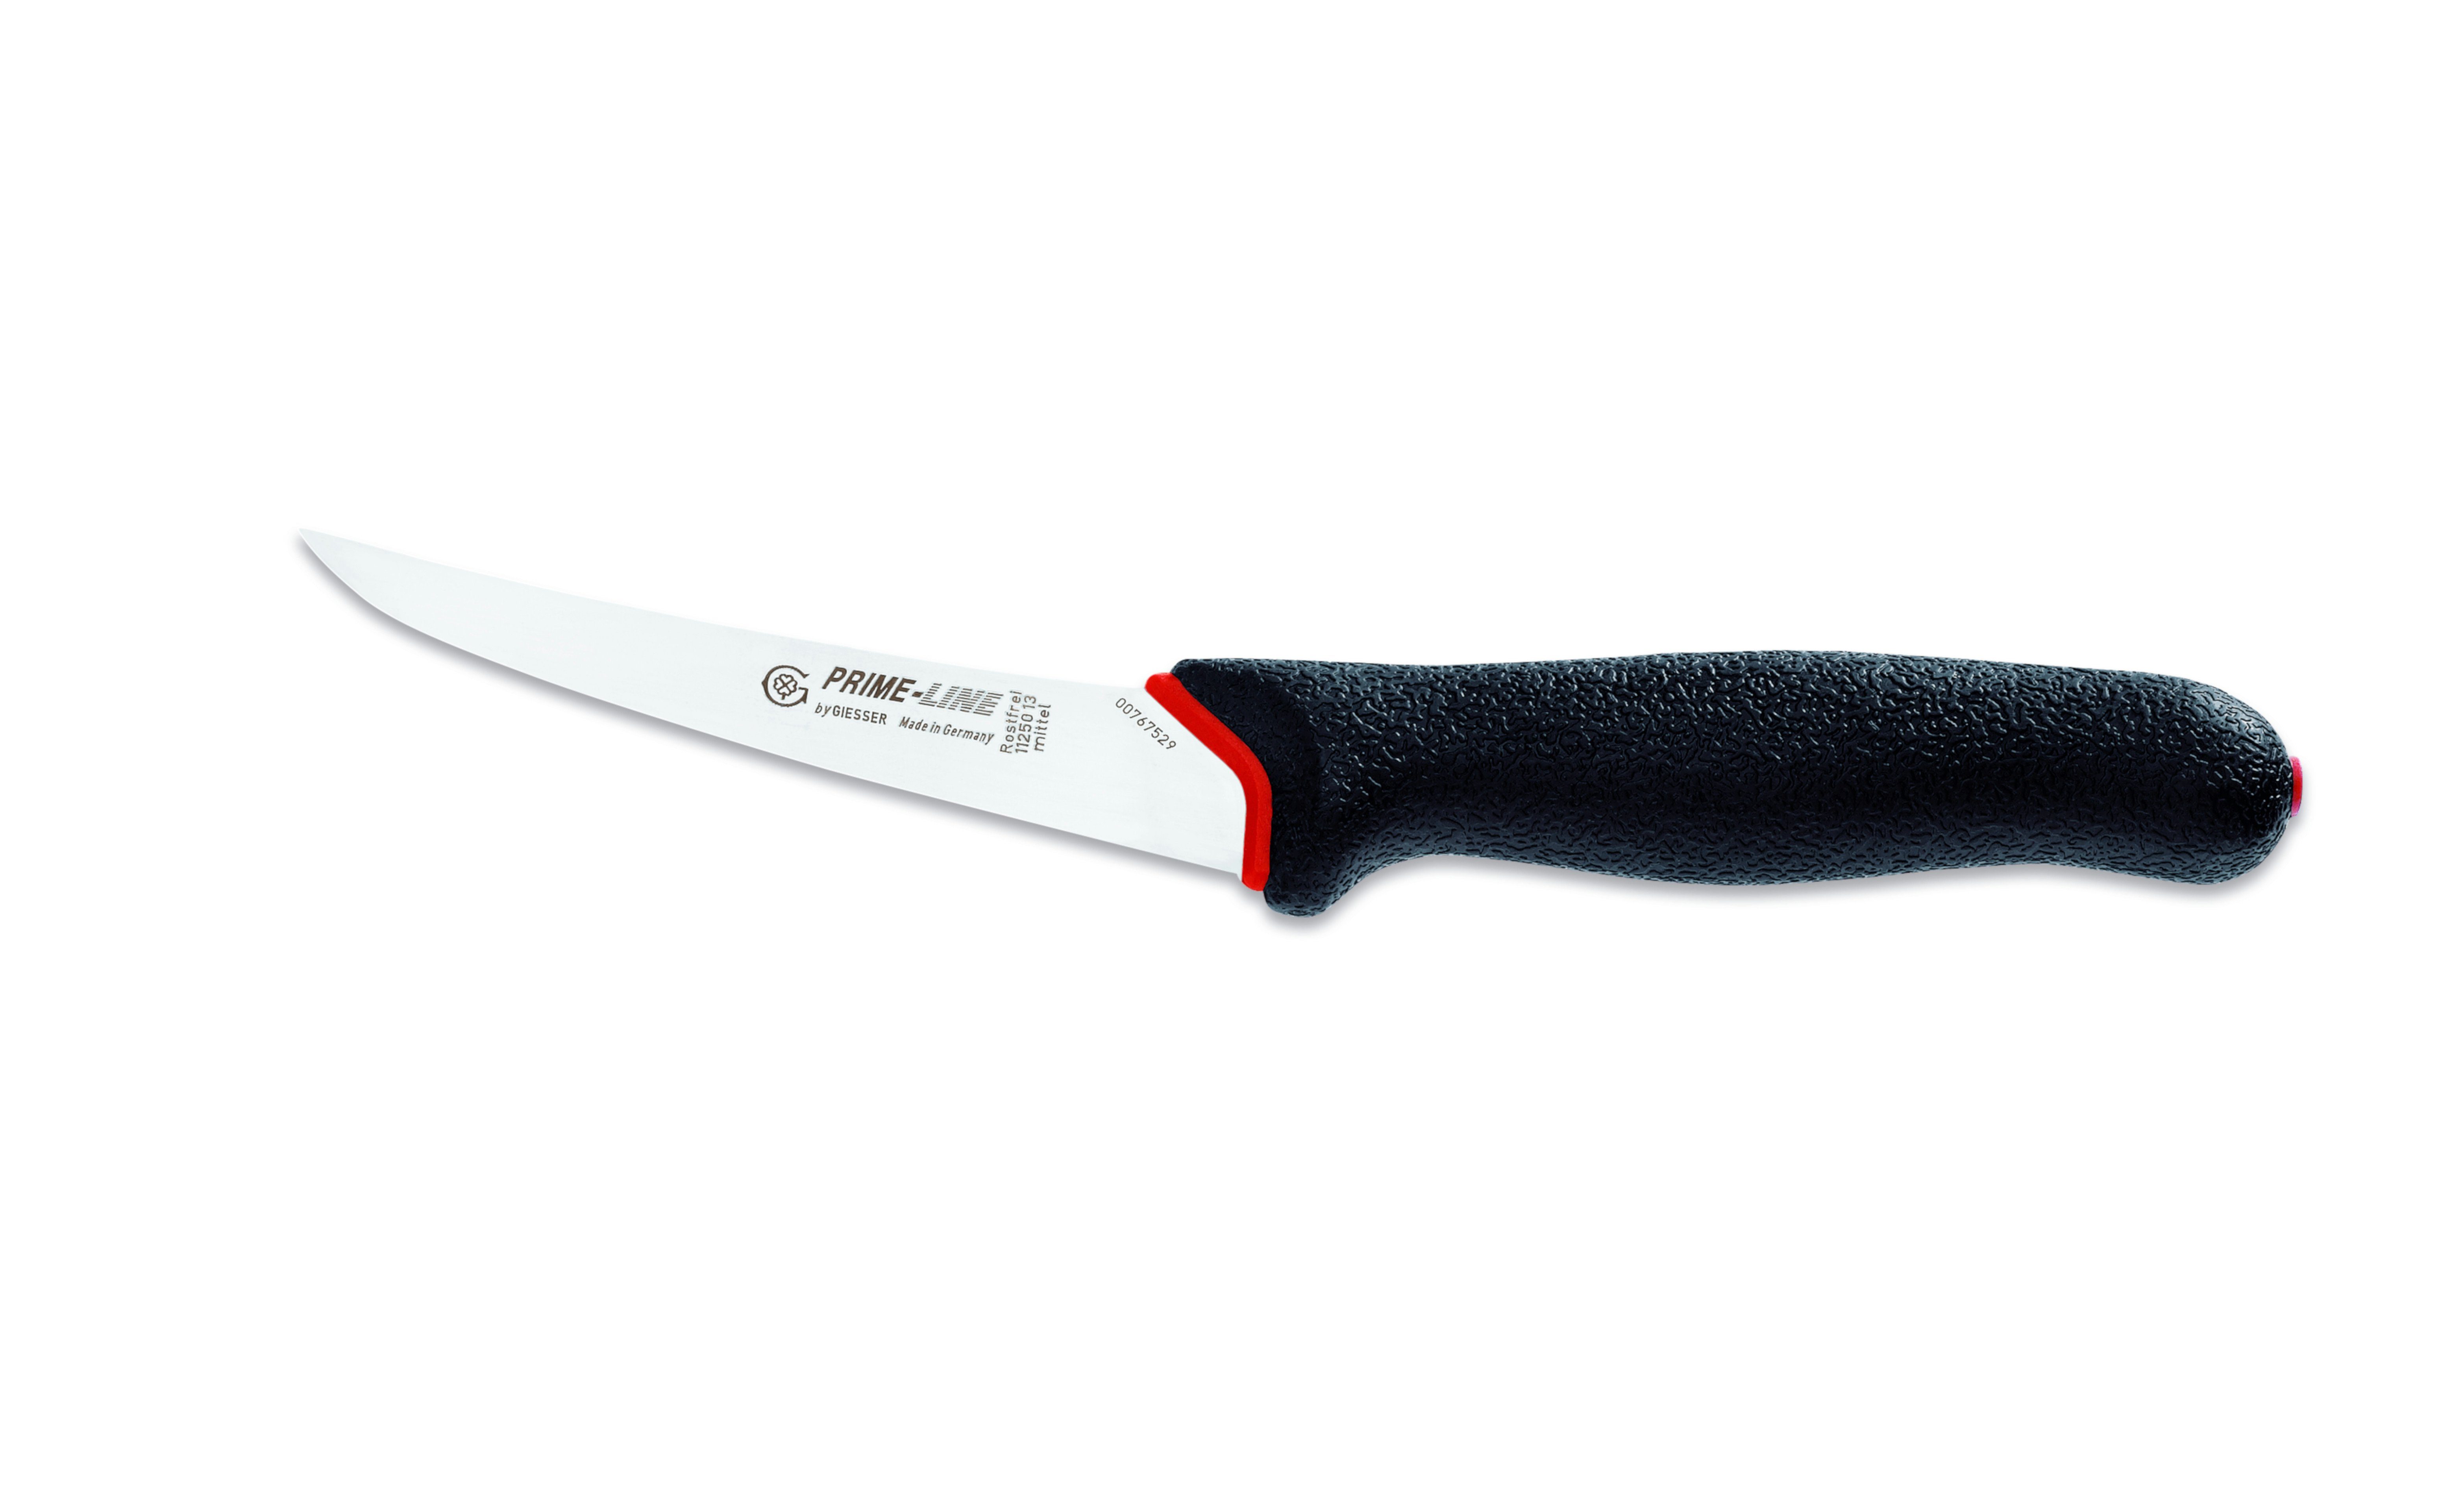 Giesser Messer Ausbeinmesser Fleischermesser 11250 13/15, PrimeLine, rutschfest, weicher Griff schwarz